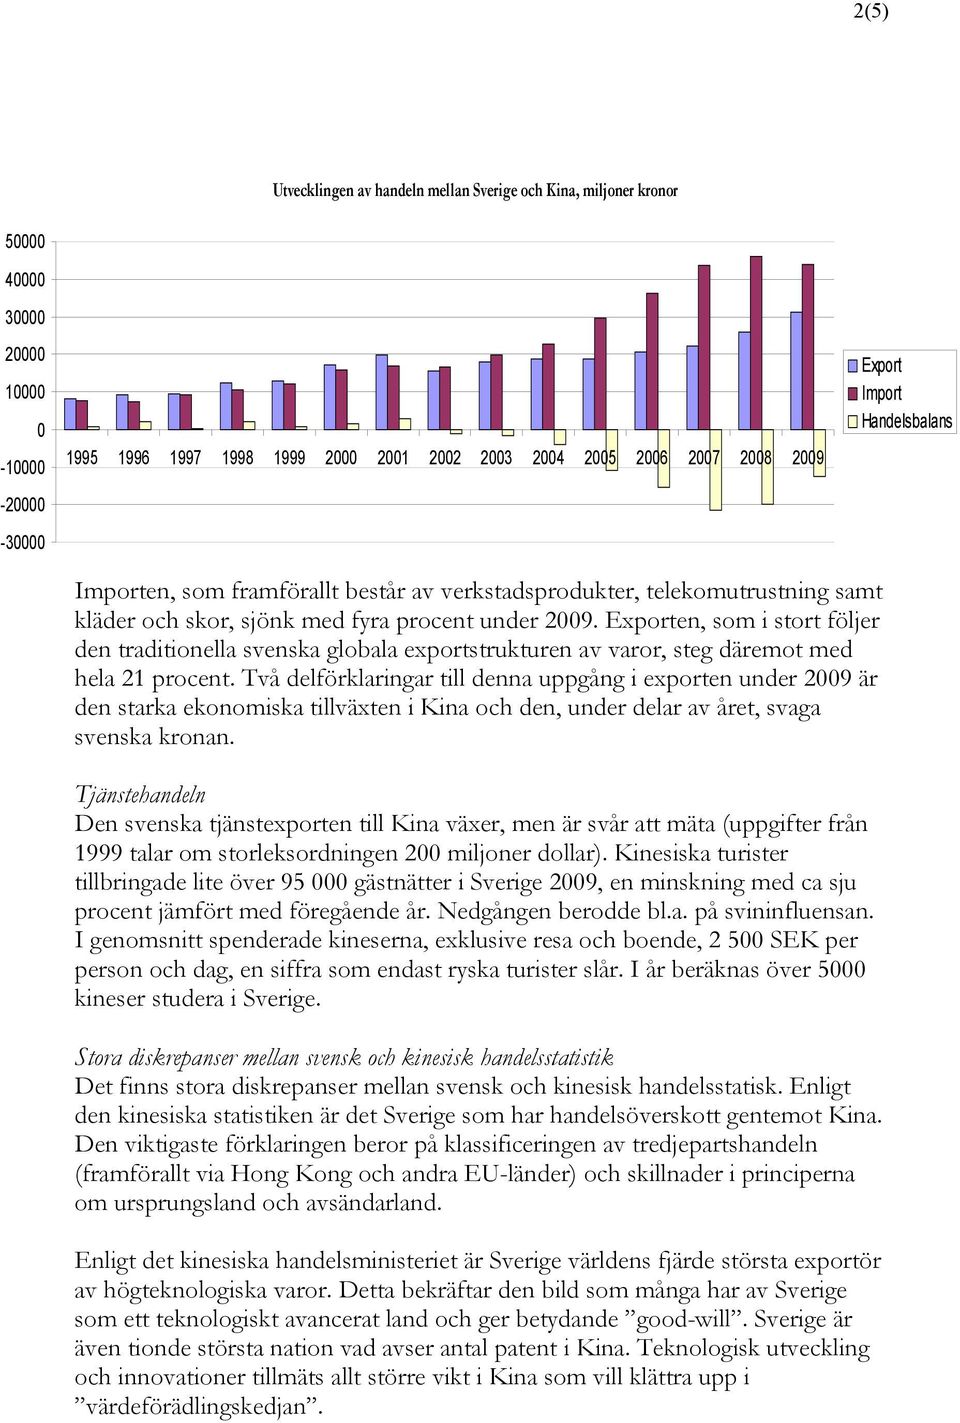 Exporten, som i stort följer den traditionella svenska globala exportstrukturen av varor, steg däremot med hela 21 procent.